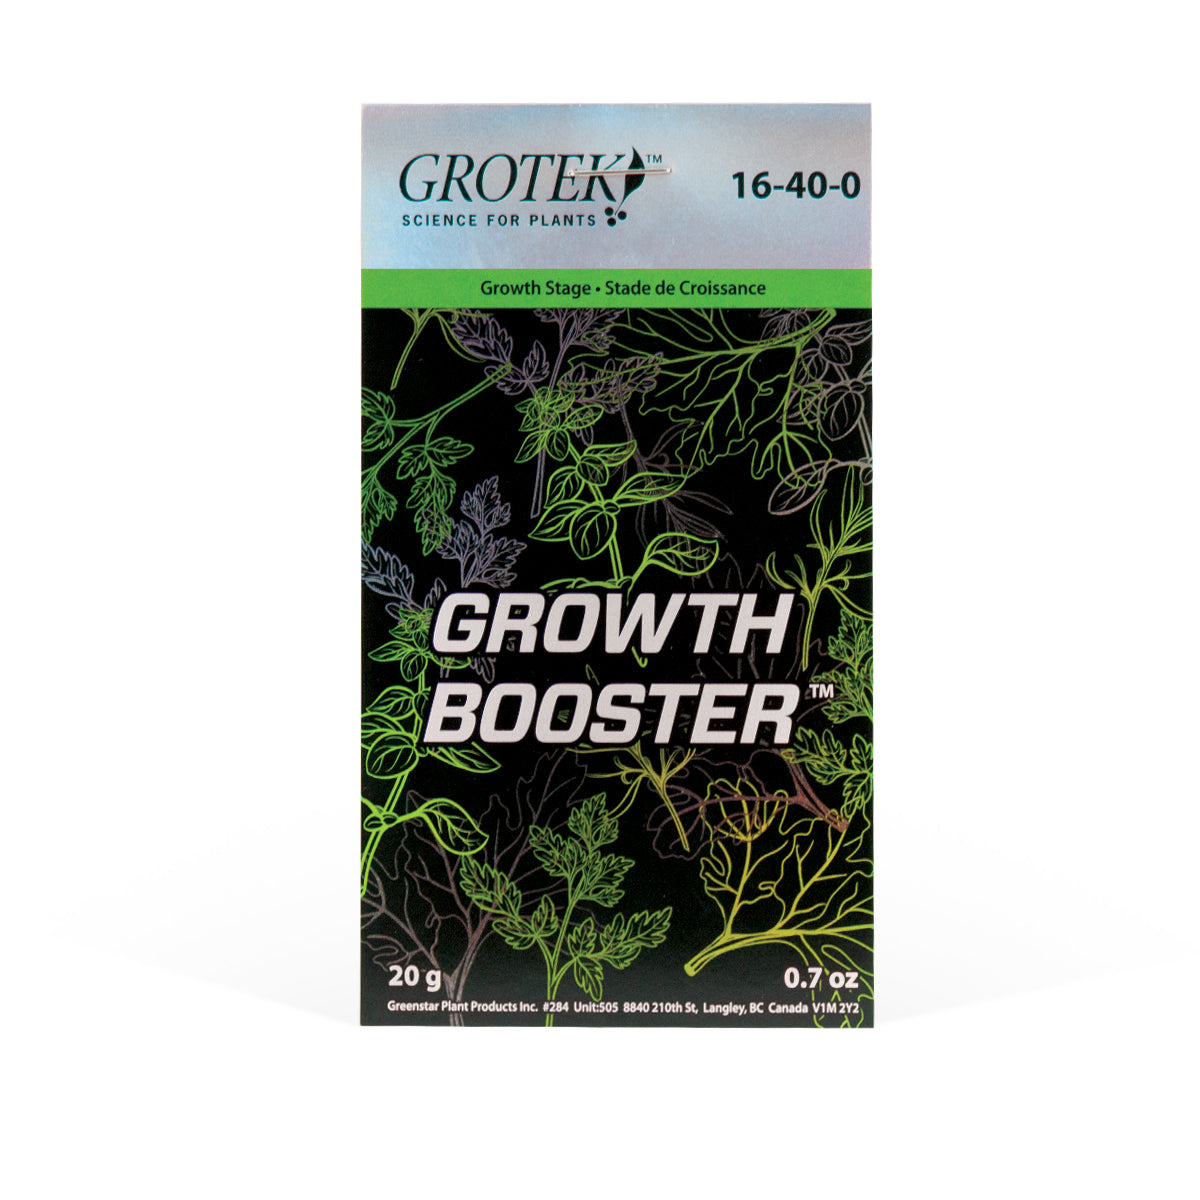 Grotek - Growth Booster México